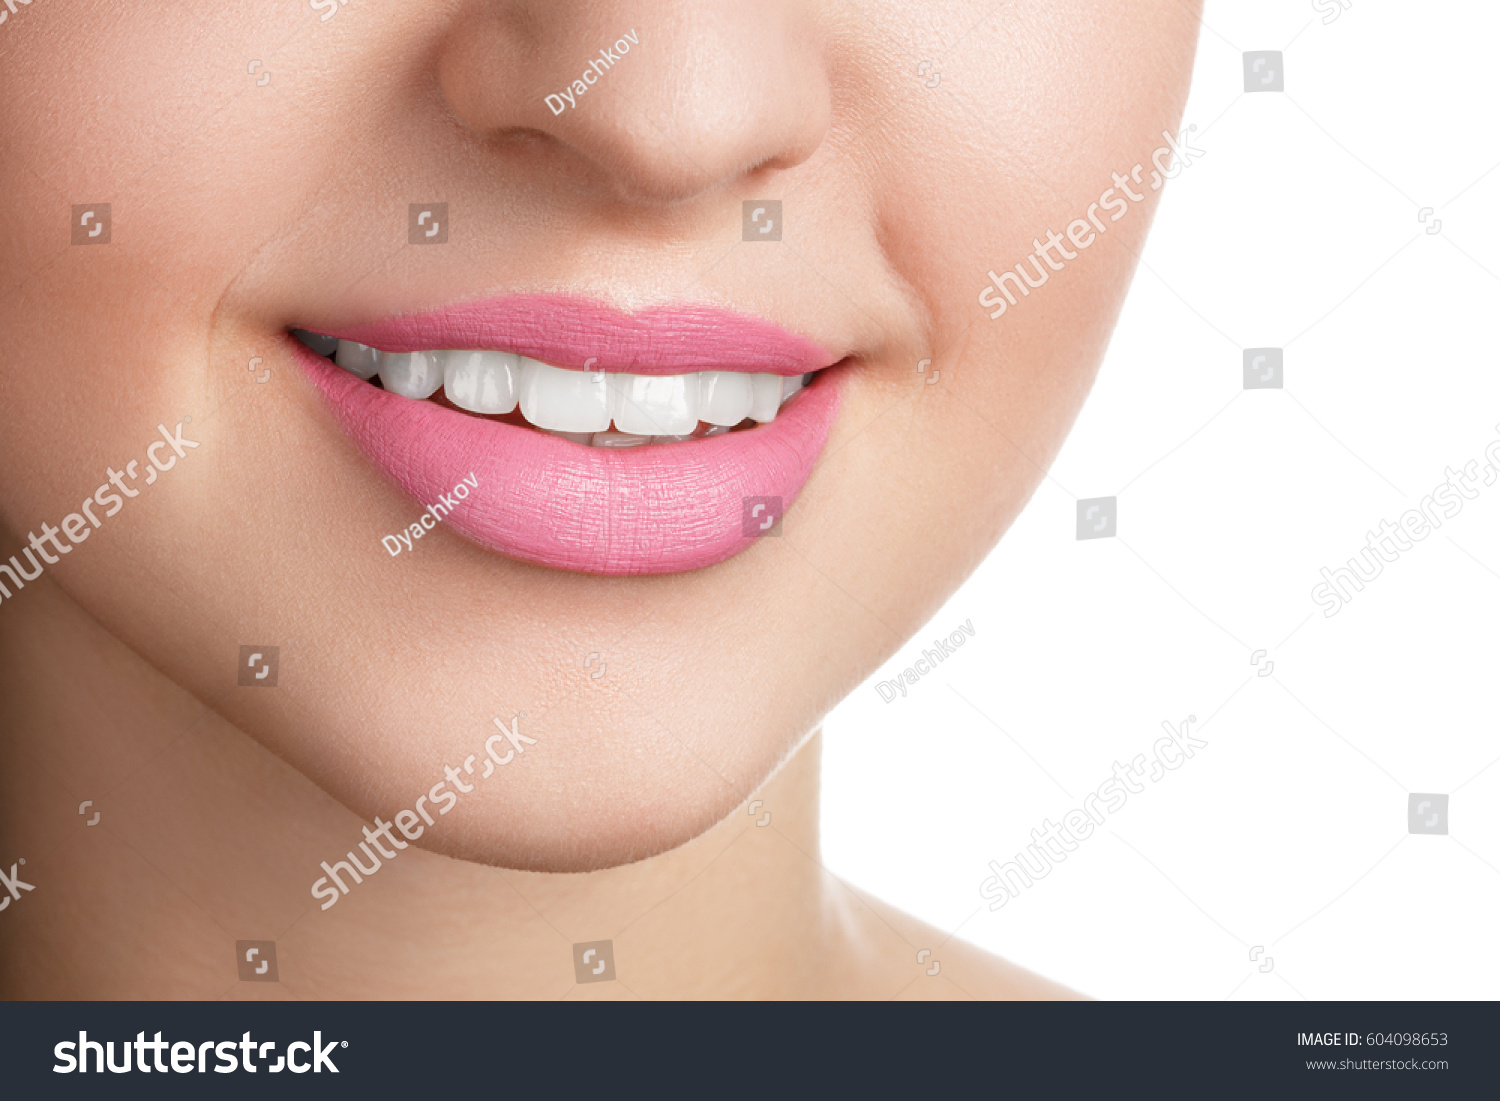 губы в форме полумесяца фото